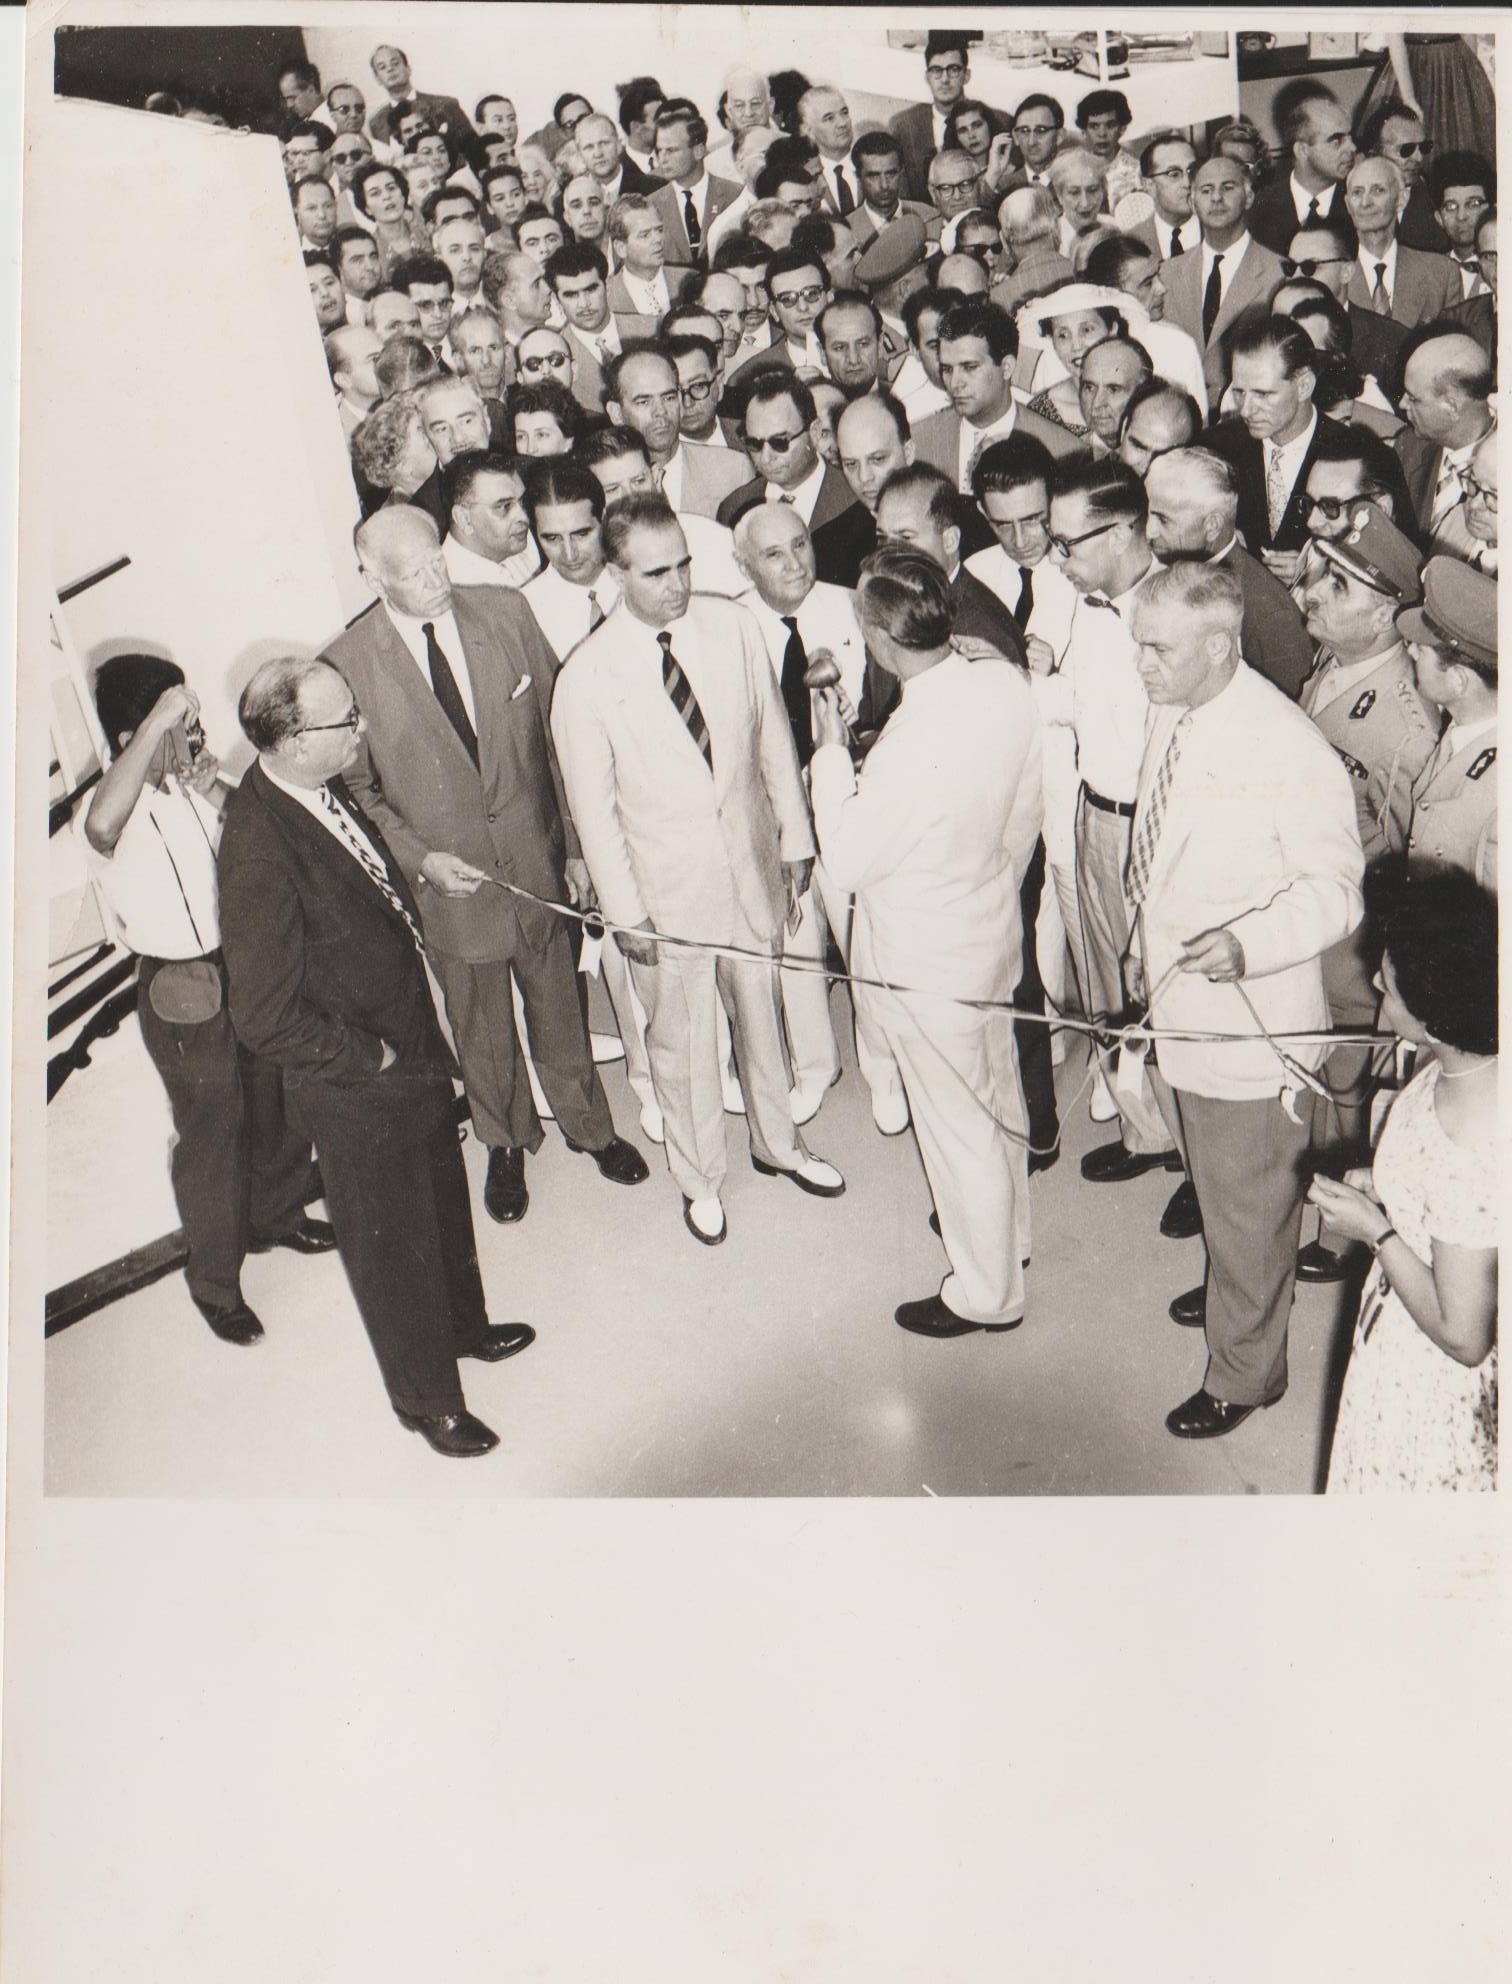 Τα επίσημα εγκαίνια της ΔΕΘ του 1957 έκανε ο Κωνσταντίνος Καραμανλής 